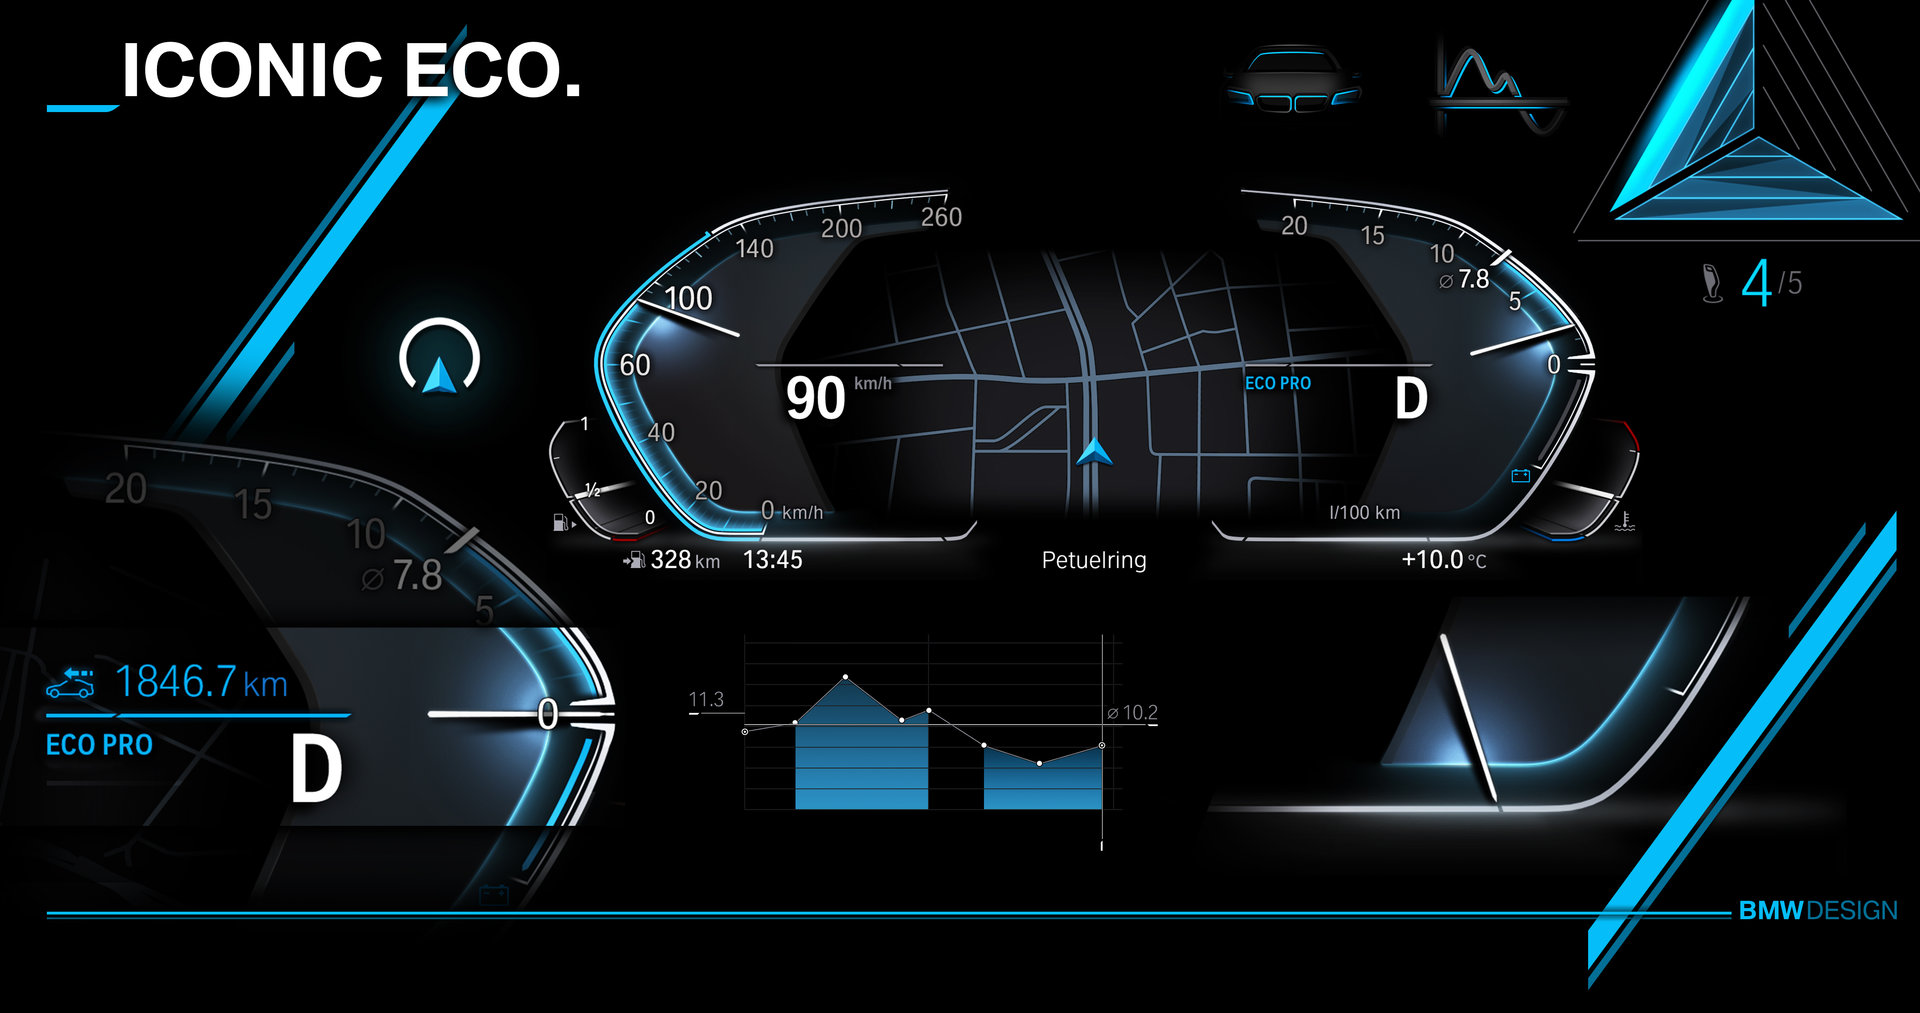 Neues Design „Iconic Eco“ für das Info Display